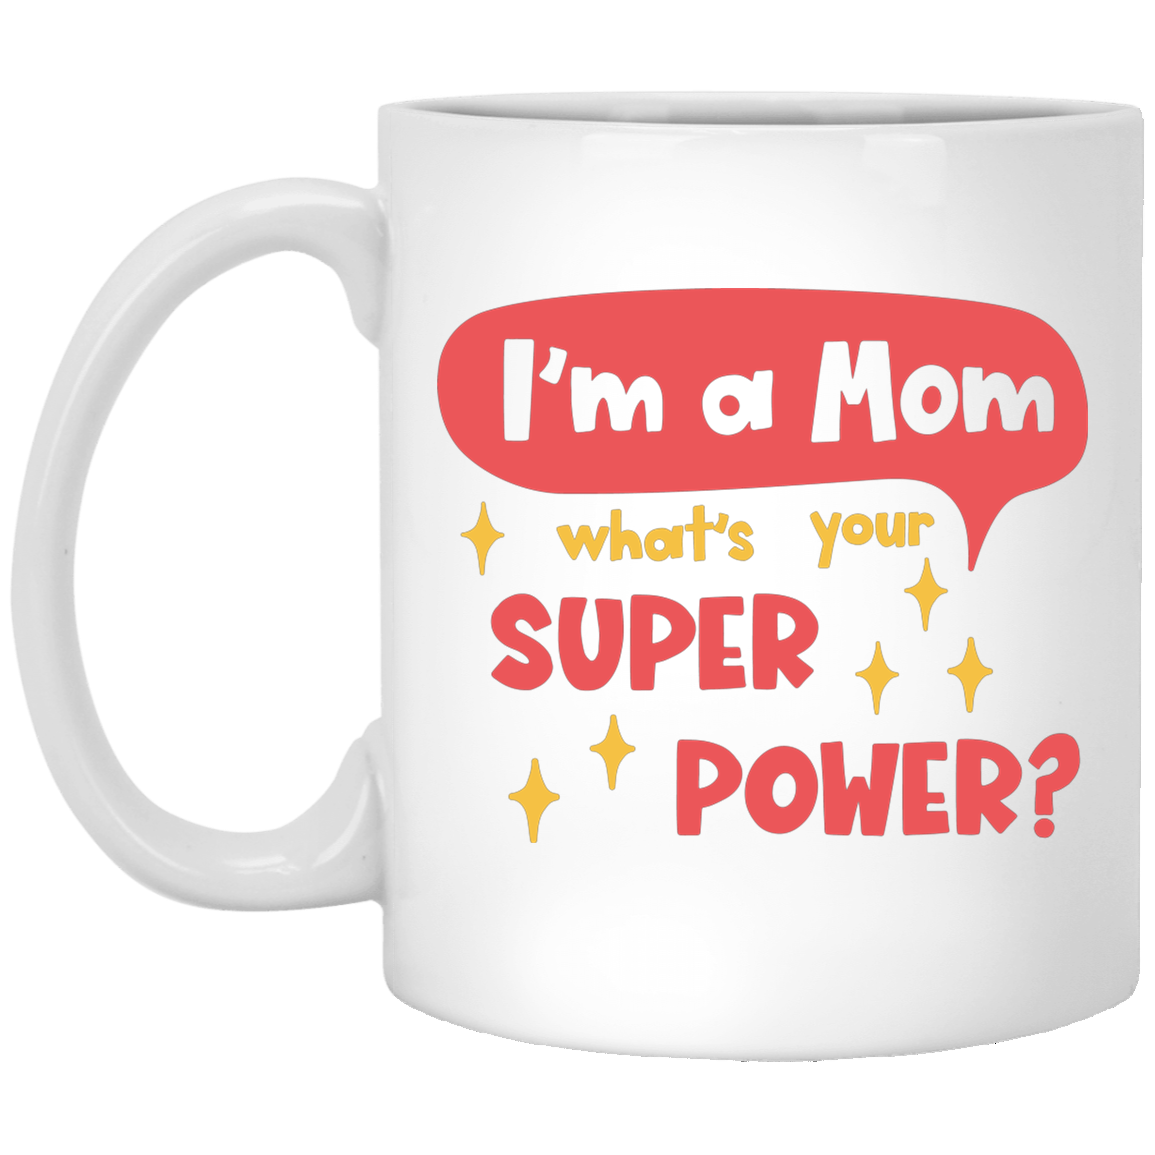 Super Power 11 oz. White Mug